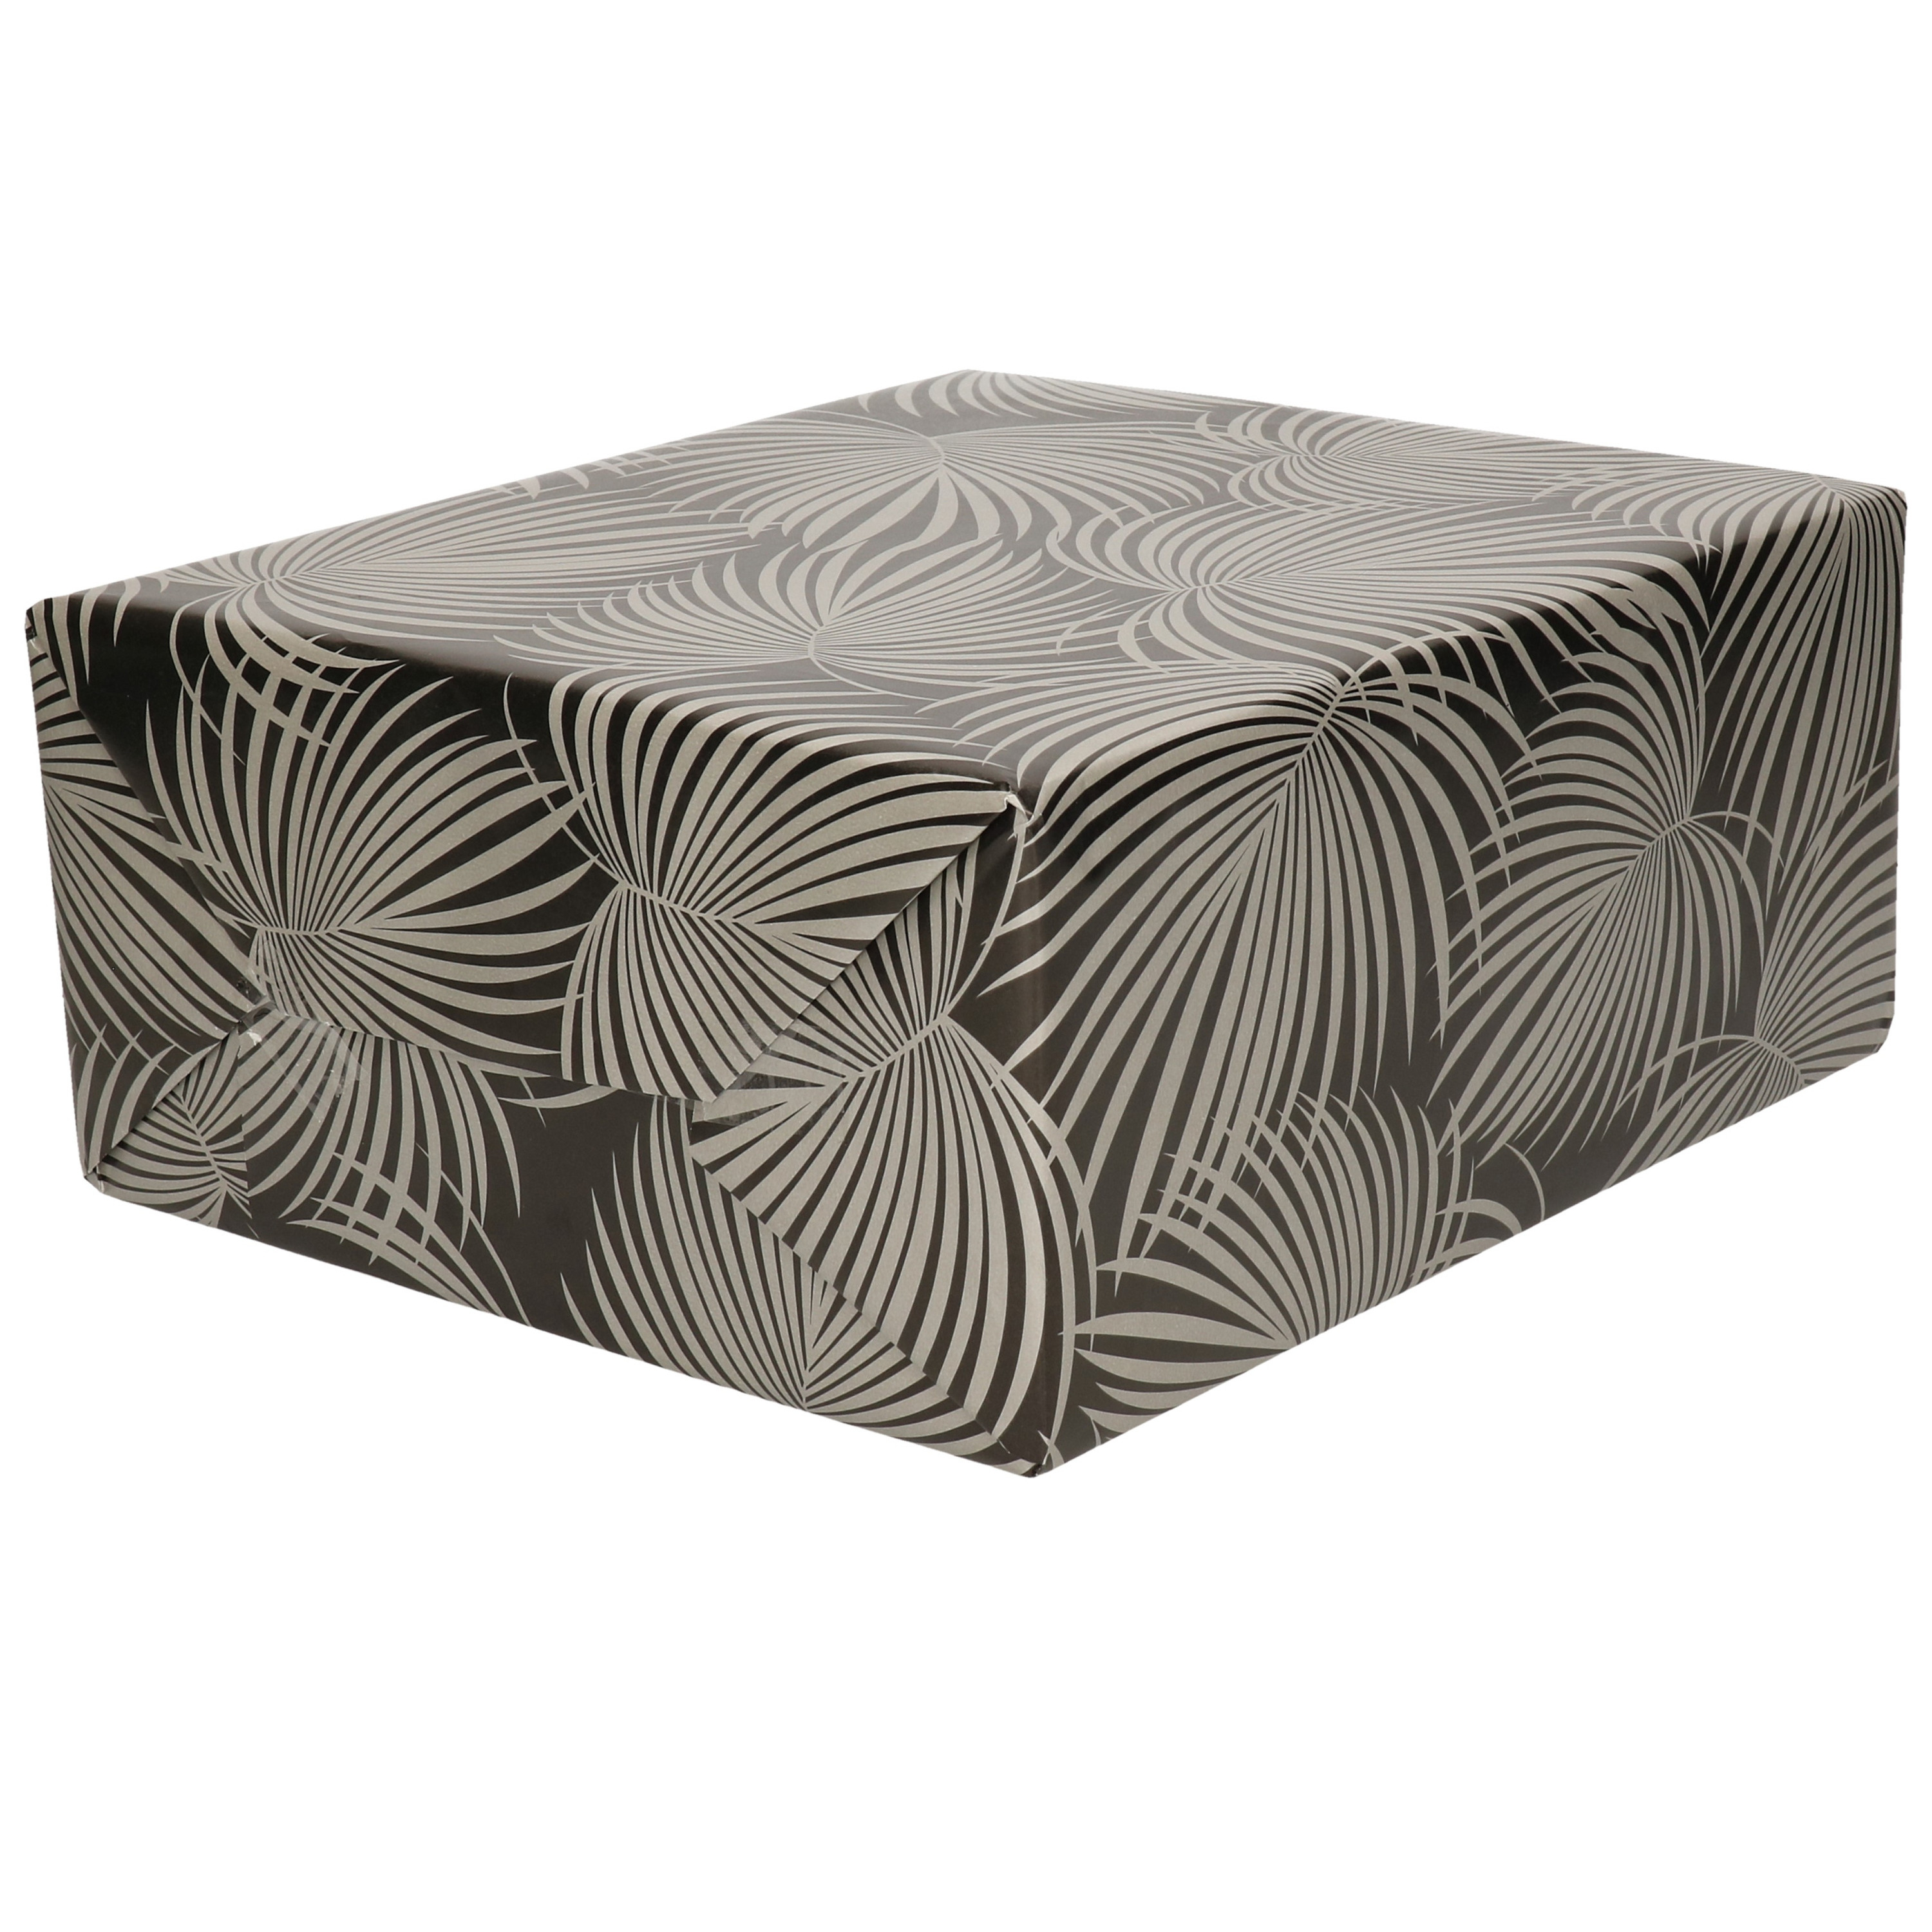 1x Rollen folie inpakpapier/cadeaupapier metallic zwart/zilver met bladeren 70 x 200 cm